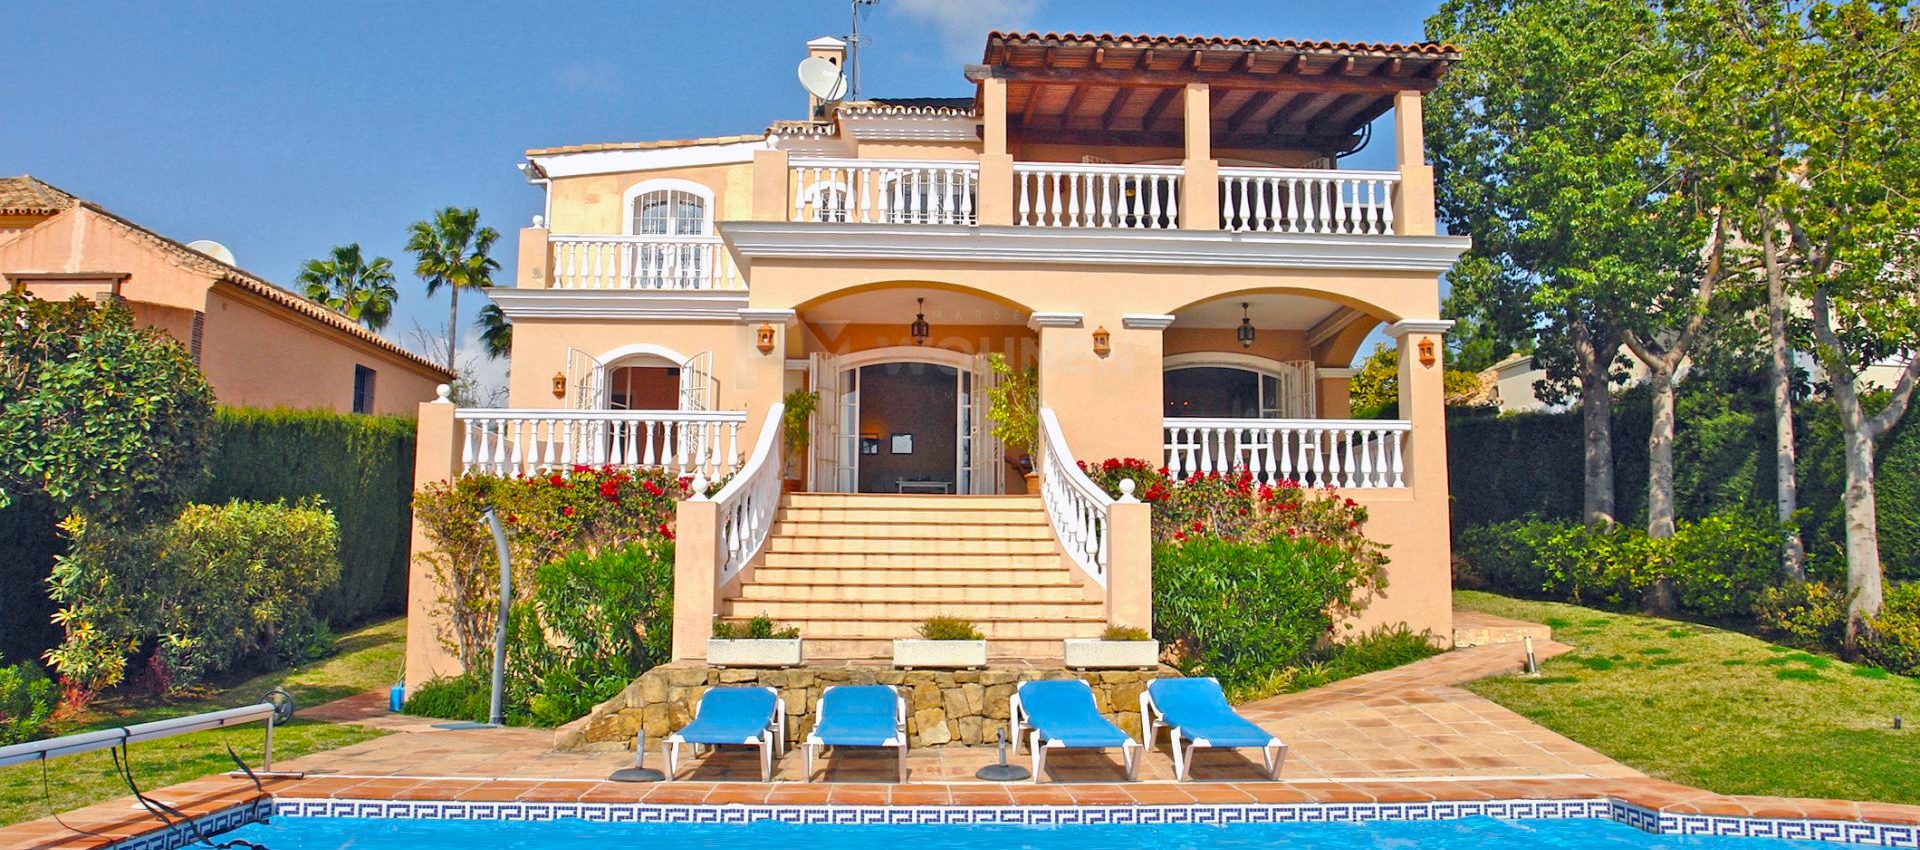 Wunderschönes andalusisches Anwesen in einer beliebten Urbanisation westlich von Marbella